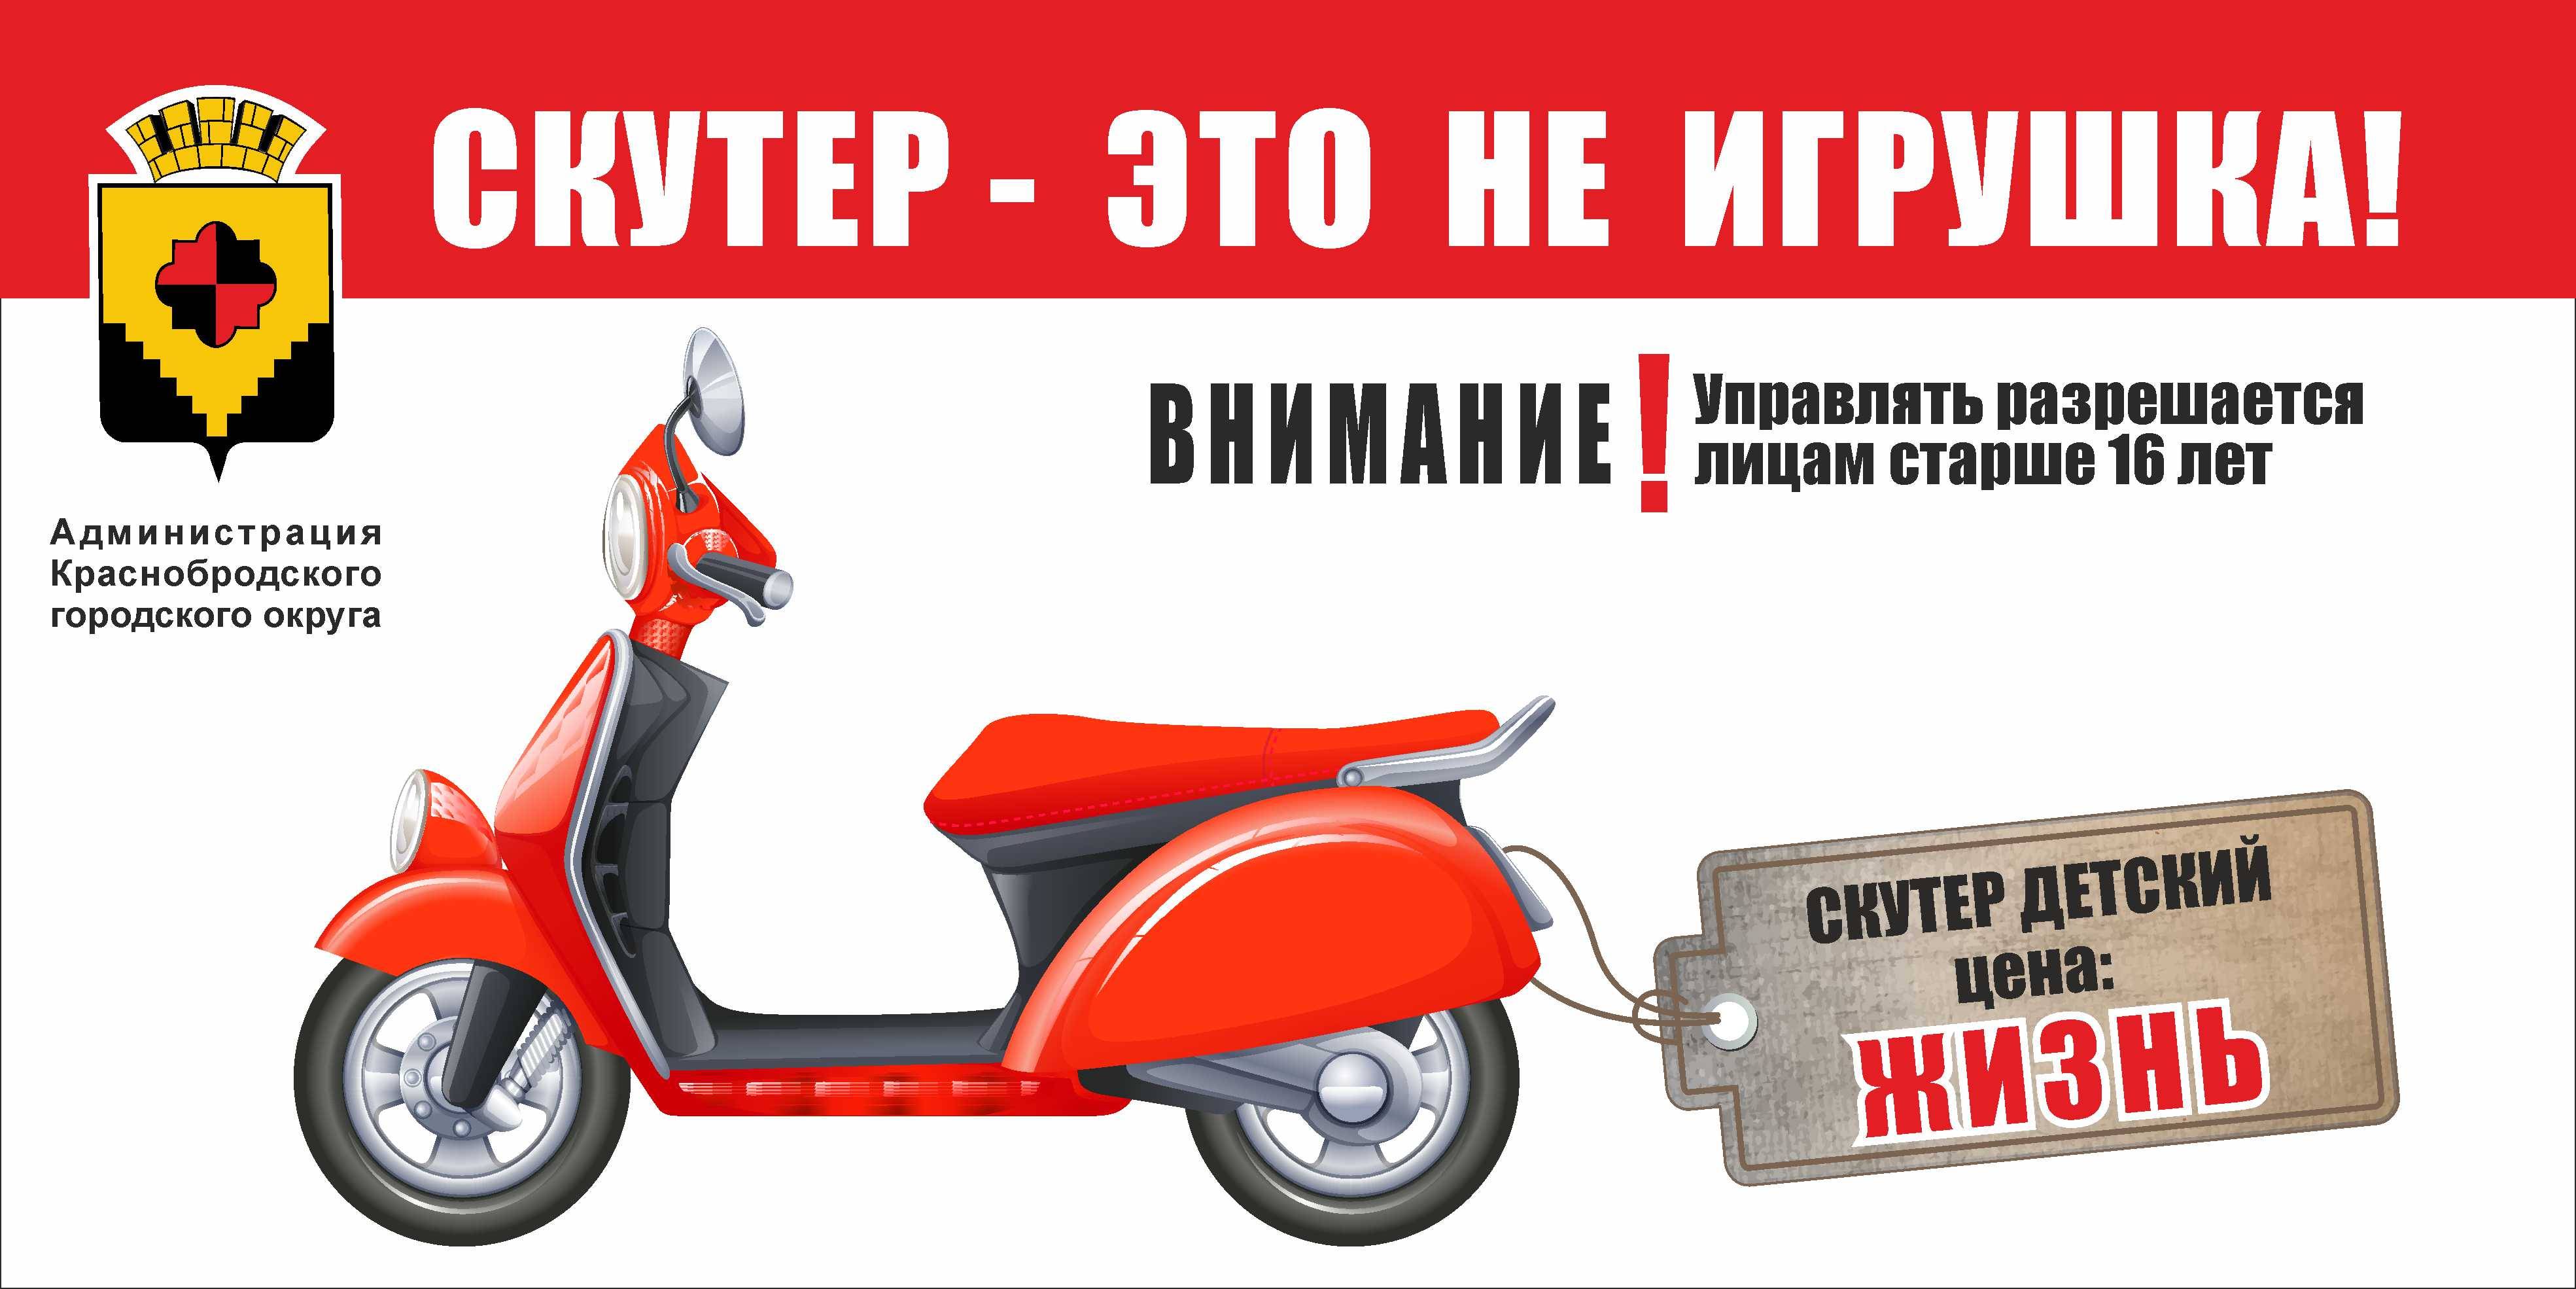 Чем мопед отличается от скутера avtopraim.ru